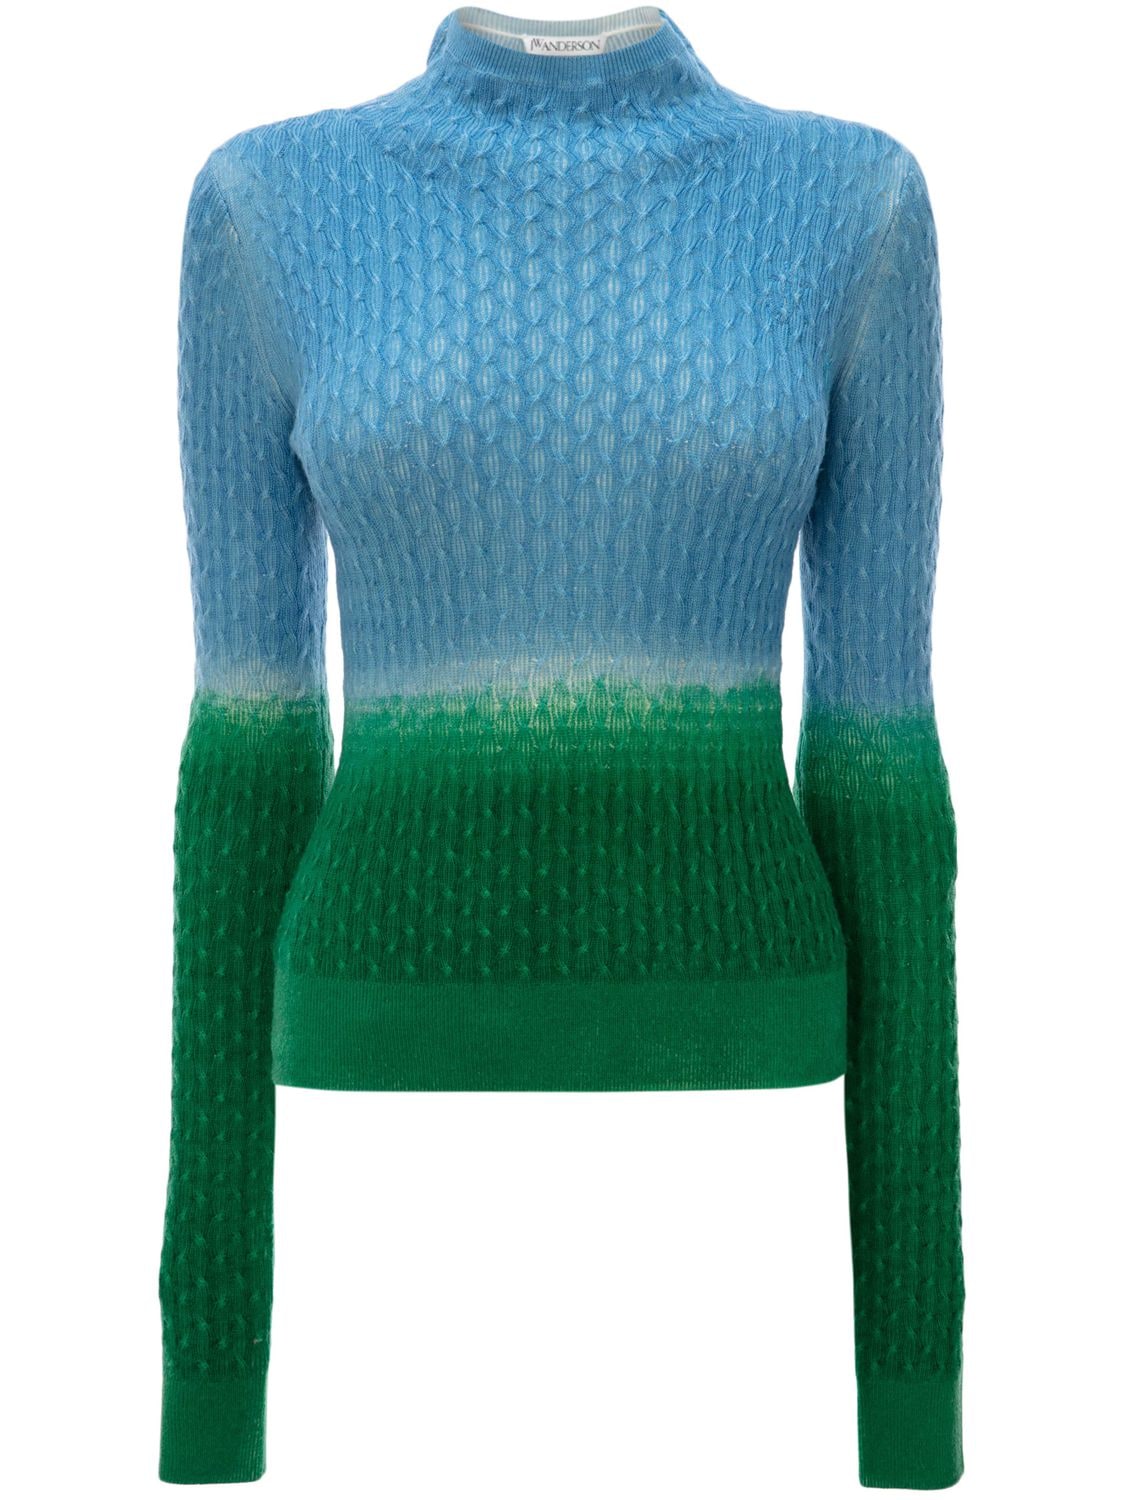 Luisaviaroma Boys Clothing Sweaters Turtlenecks Knit Wool Turtleneck 